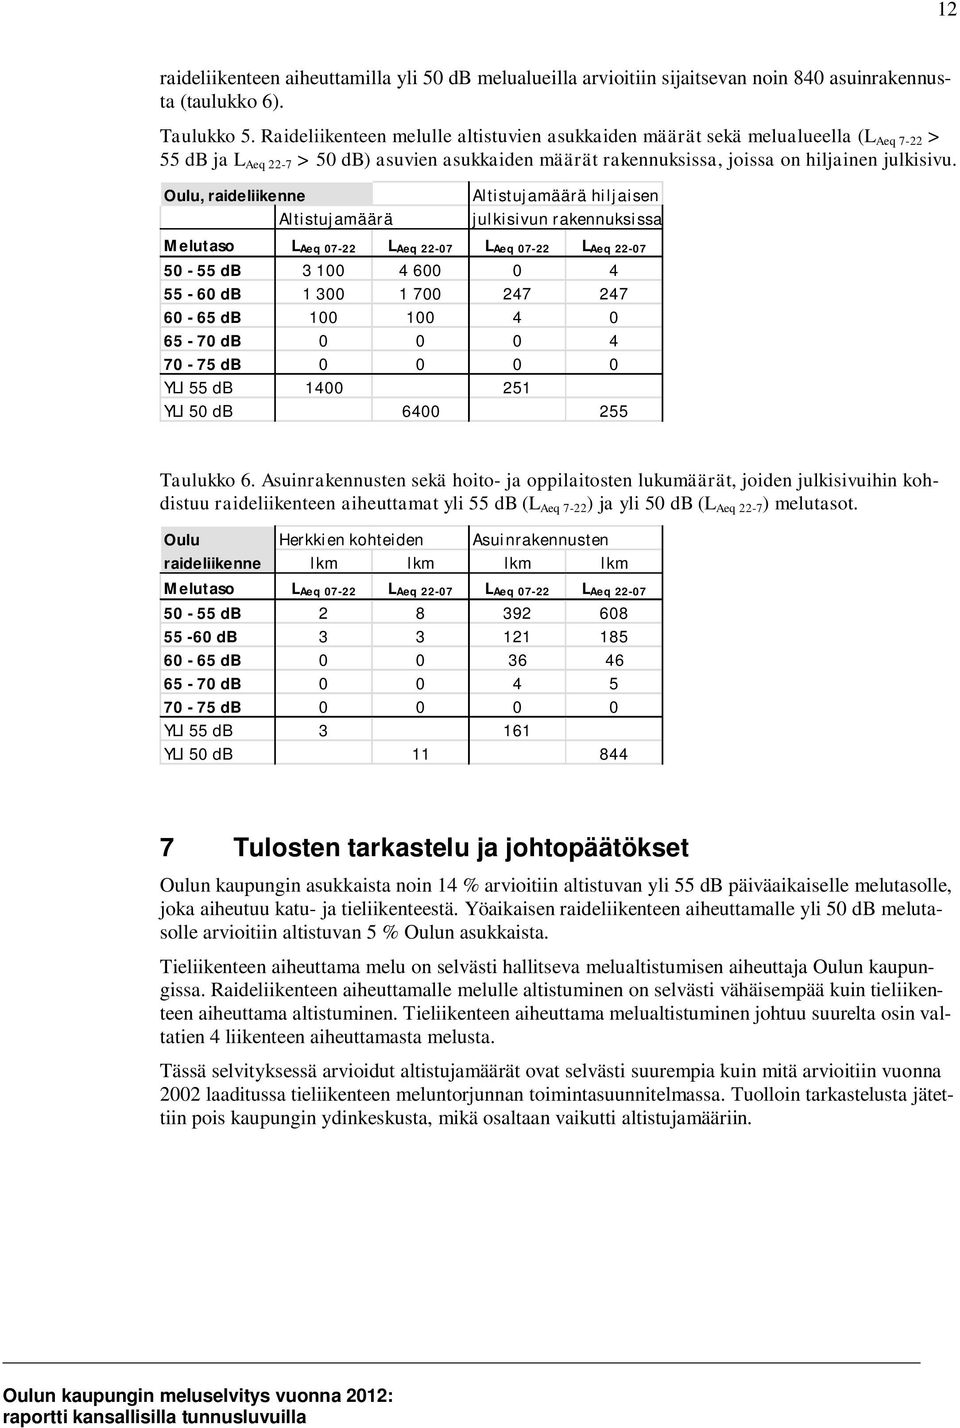 Oulu, raideliikenne Altistujamäärä Altistujamäärä hiljaisen julkisivun rakennuksissa Melutaso LAeq 07-22 LAeq 22-07 LAeq 07-22 LAeq 22-07 50-55 db 3 100 4 600 0 4 55-60 db 1 300 1 700 247 247 60-65